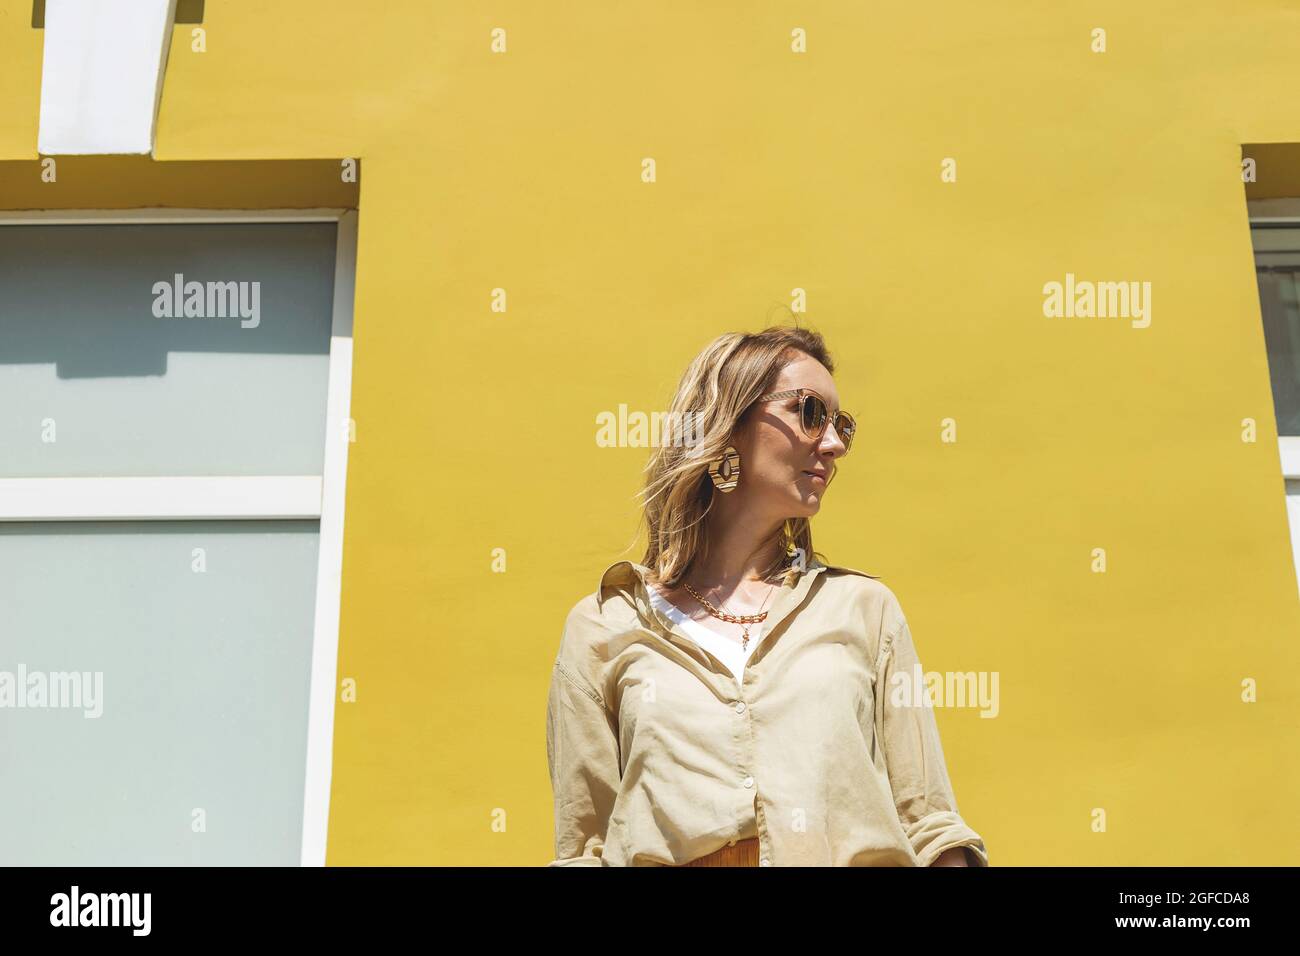 Femme élégante avec tenue jaune sur un mur aux couleurs vives Banque D'Images